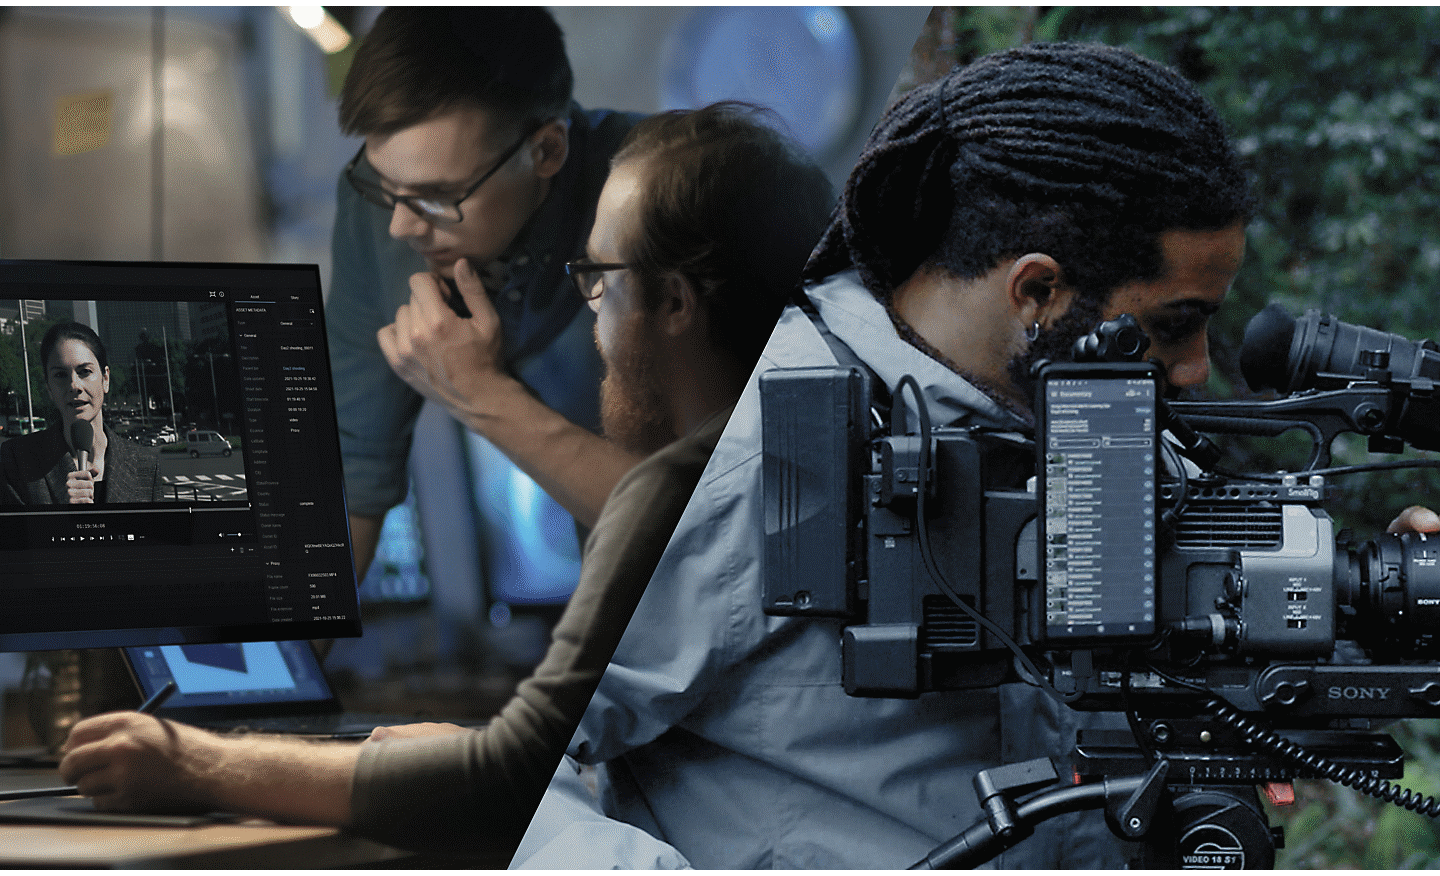 Uma equipa de cinema de três pessoas numa área arborizada e um homem no centro da imagem ajusta uma câmara de cinema Sony que está ligada à nuvem através de um smartphone Xperia.